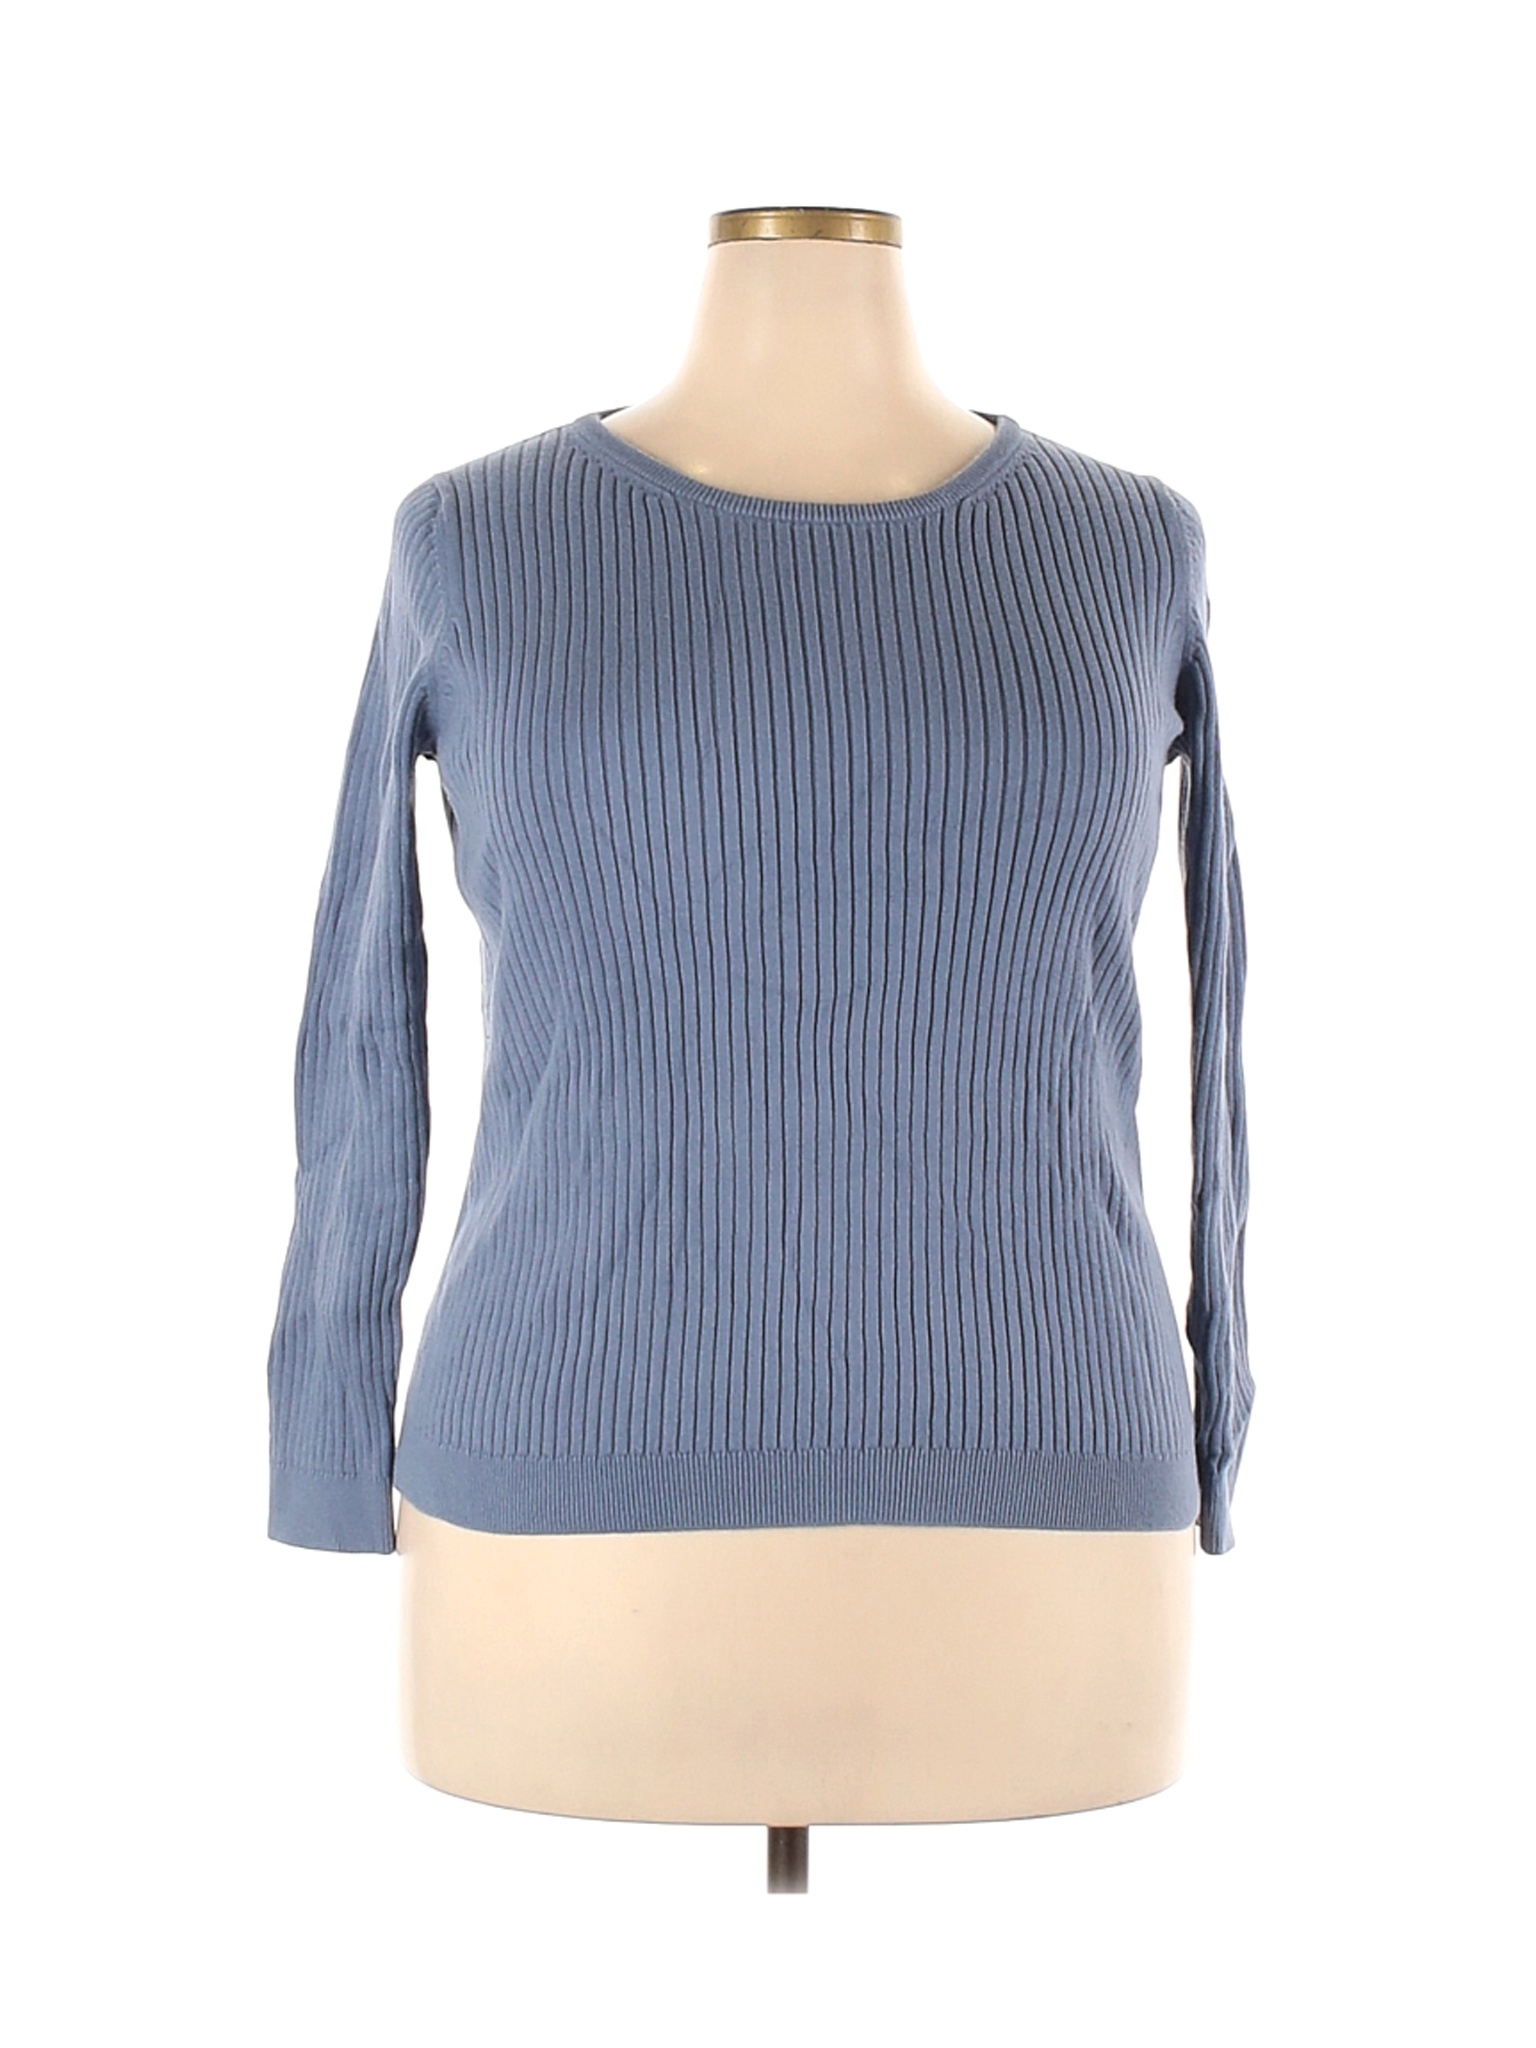 Uniqlo Women Blue Pullover Sweater XXL | eBay